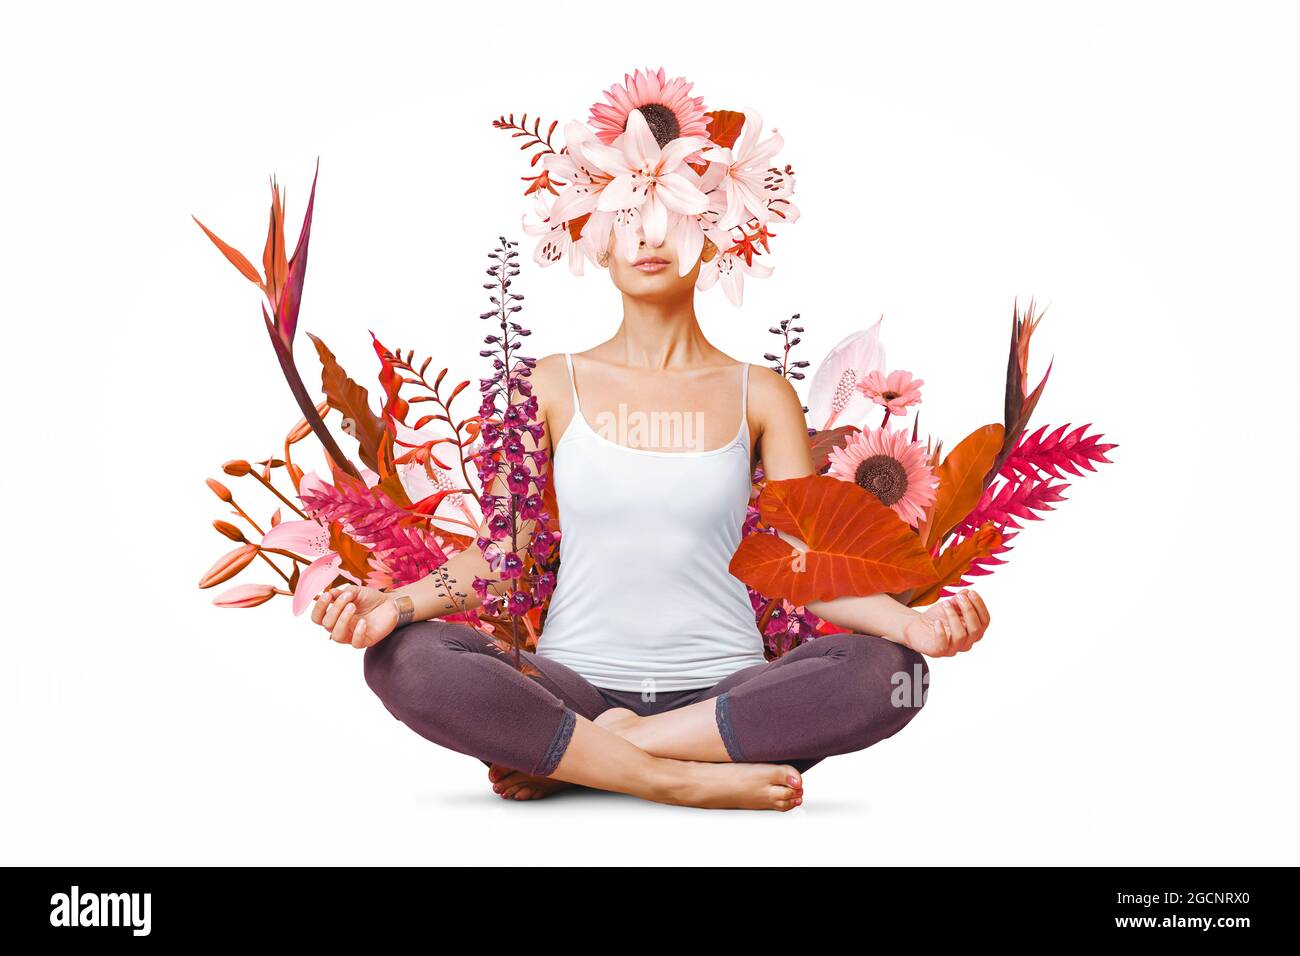 Diseño artístico abstracto de mujer joven haciendo yoga con flores alrededor del cuerpo aisladas sobre fondo blanco Foto de stock